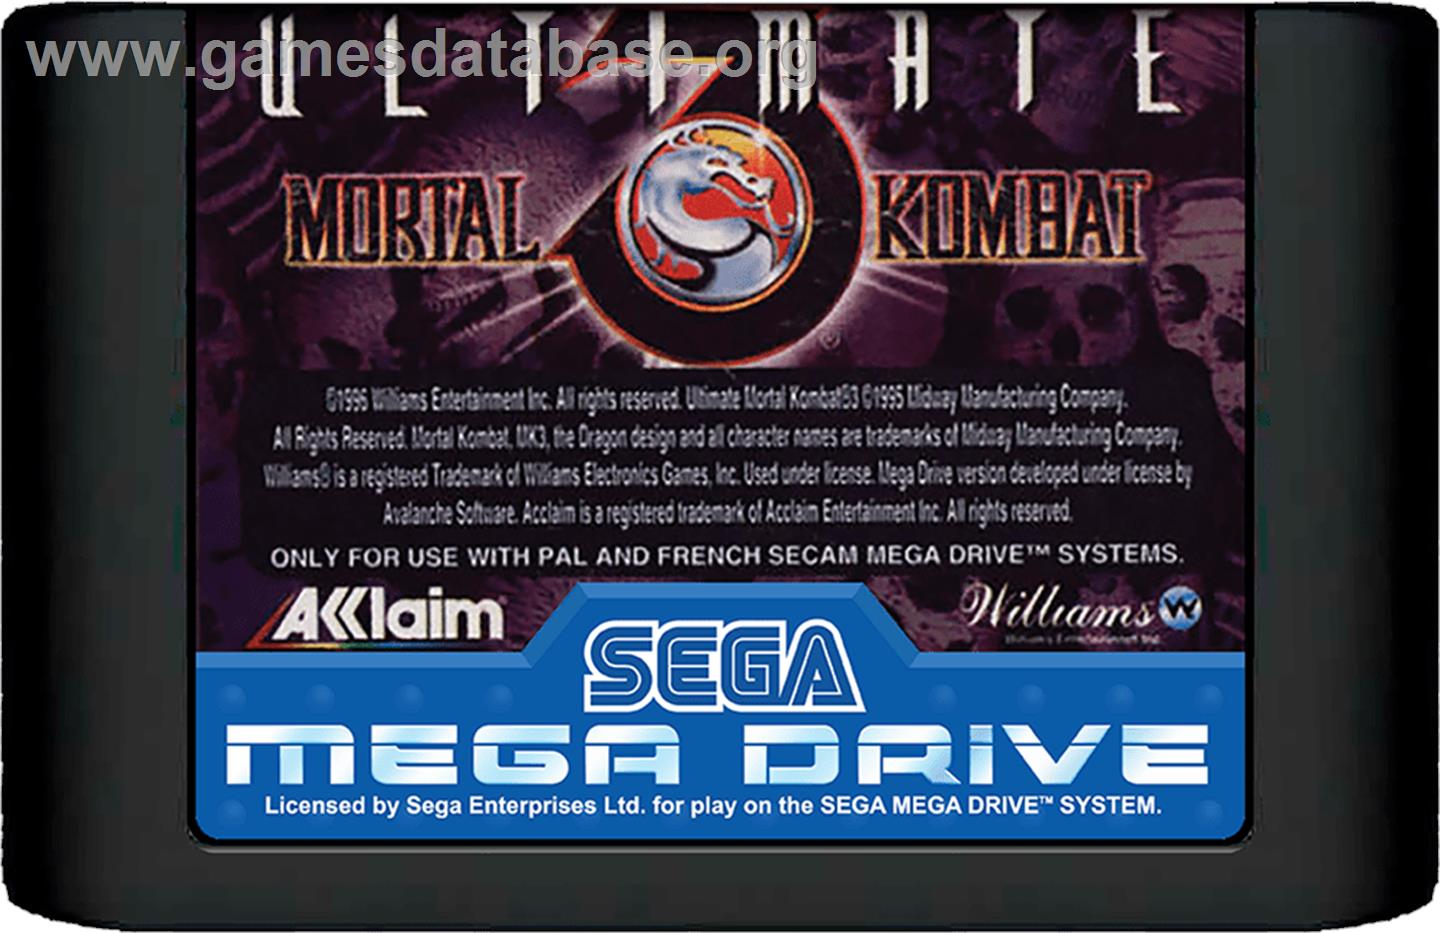 Ultimate Mortal Kombat 3 - Sega Genesis - Artwork - Cartridge